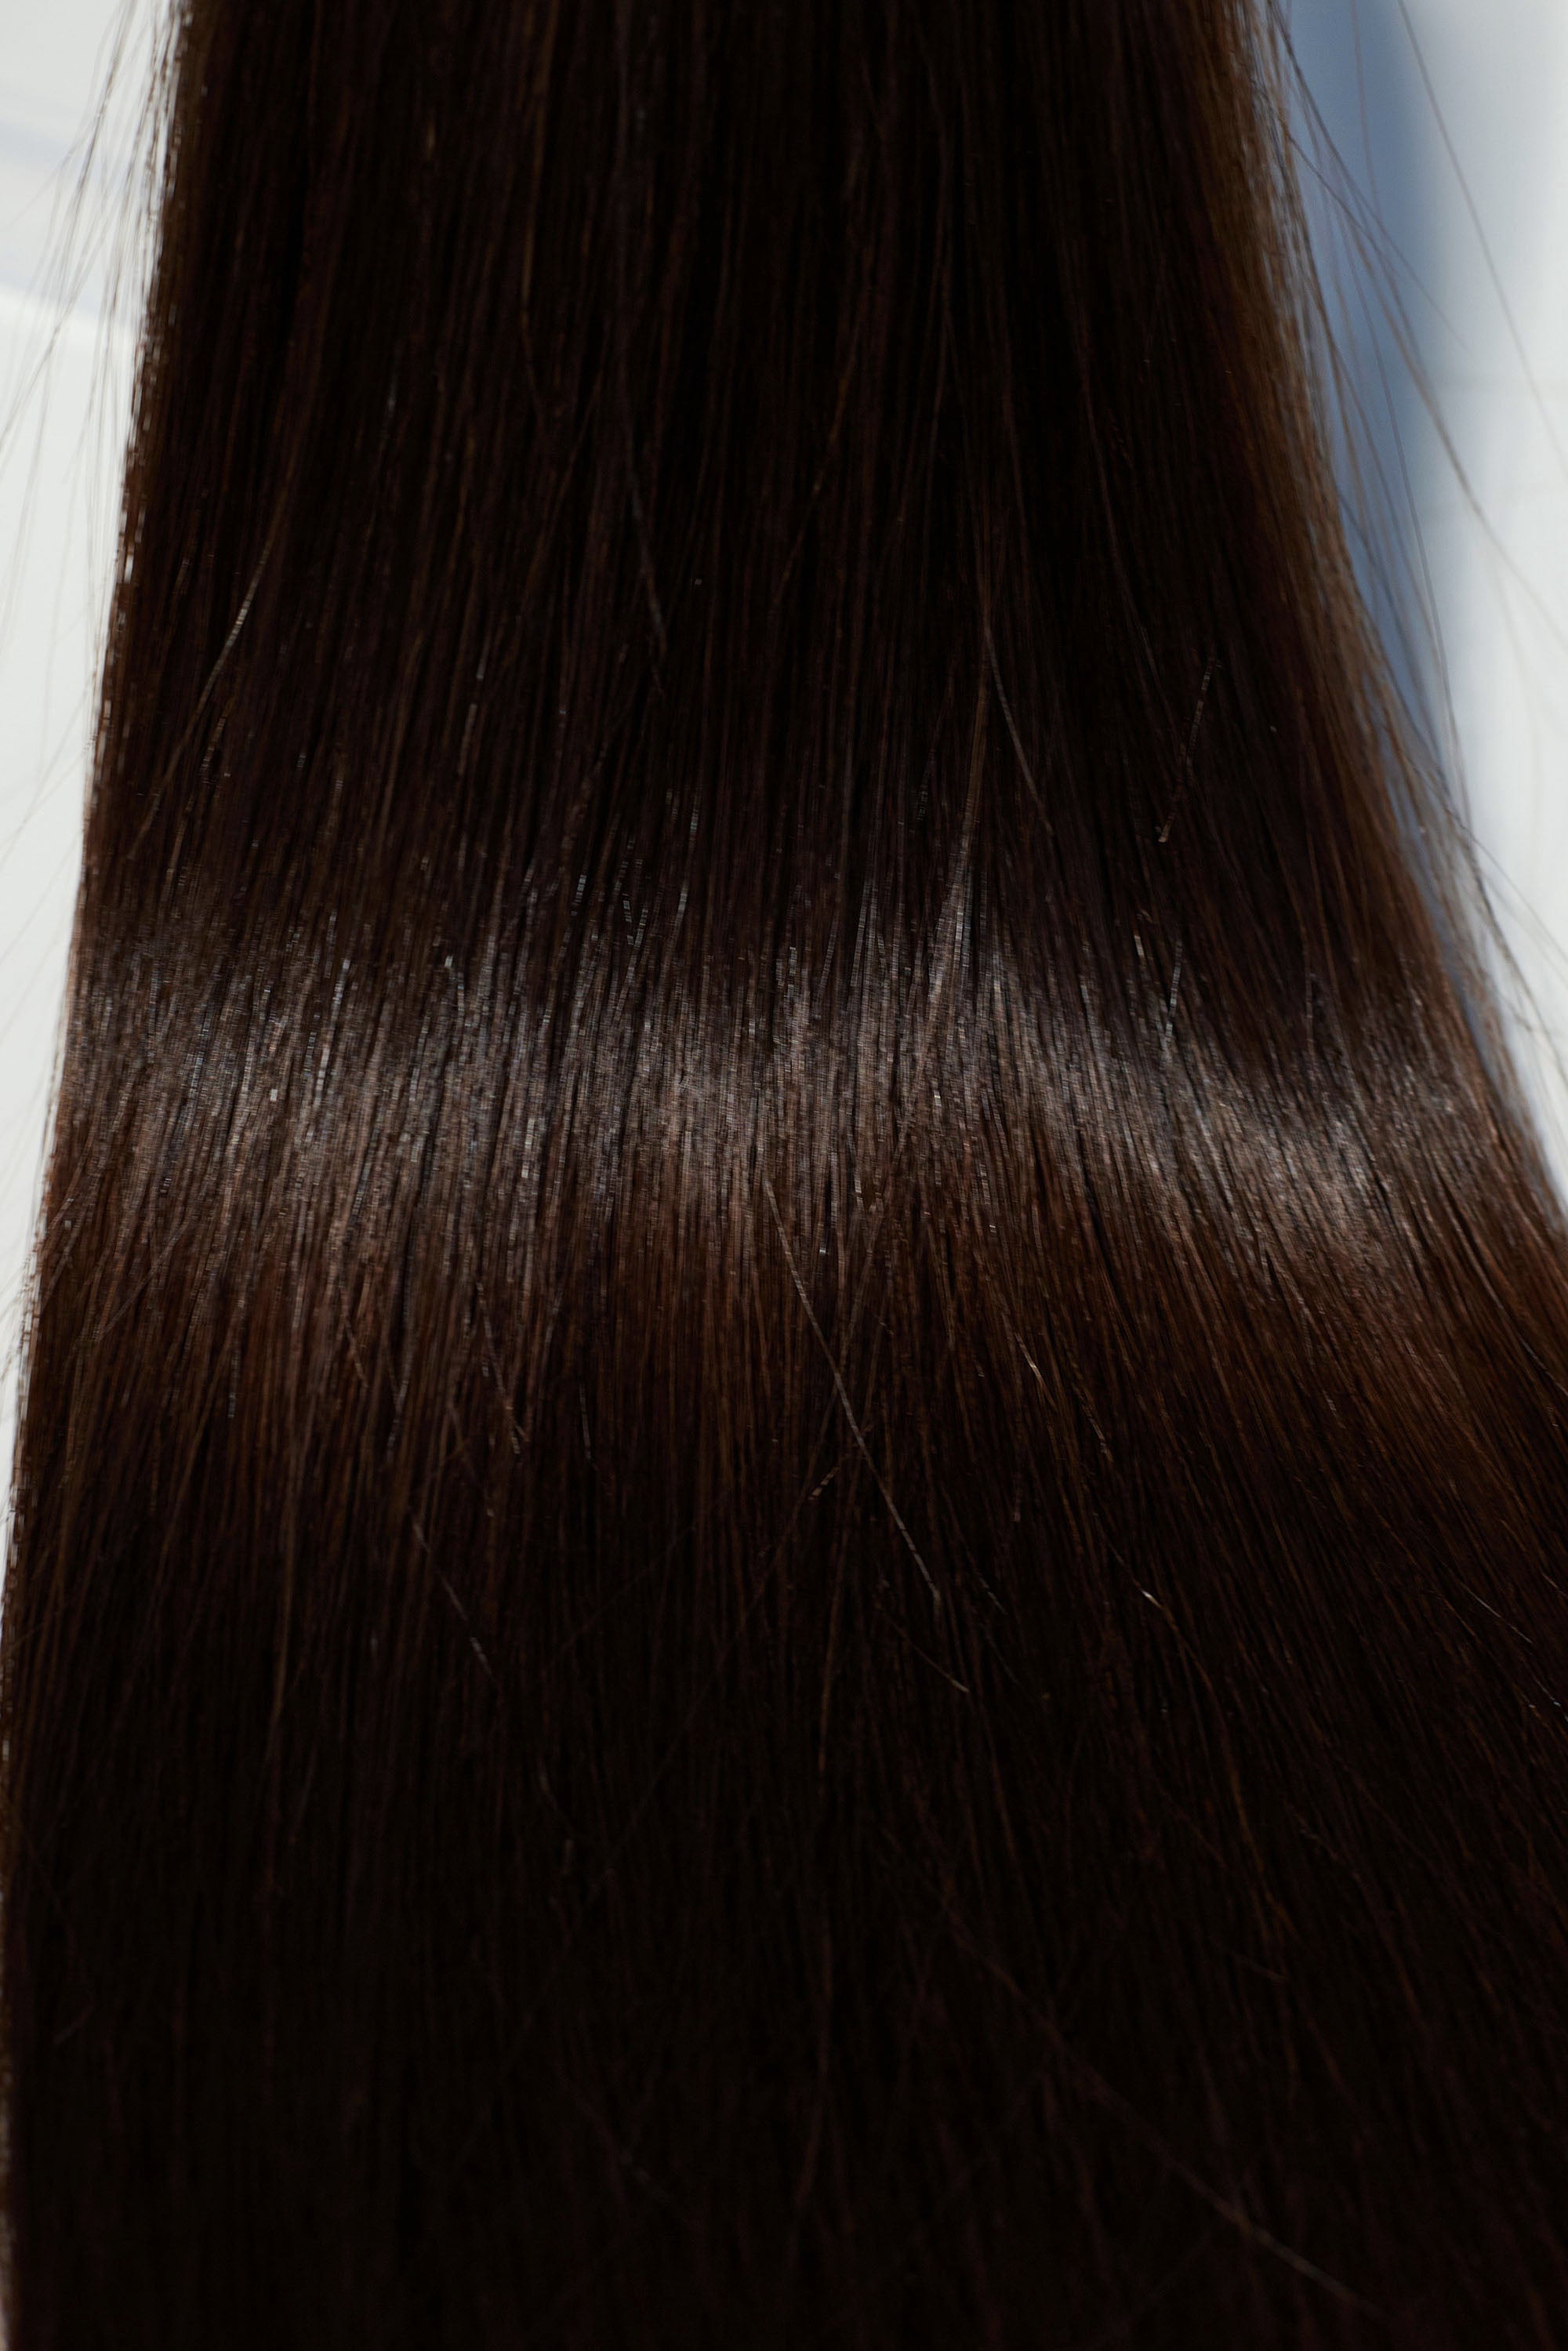 Behair professional Keratin Tip "Premium" 26" (65cm) Natural Straight Dark Coffee Brown #2 - 25g (Micro - 0.5g each pcs) hair extensions